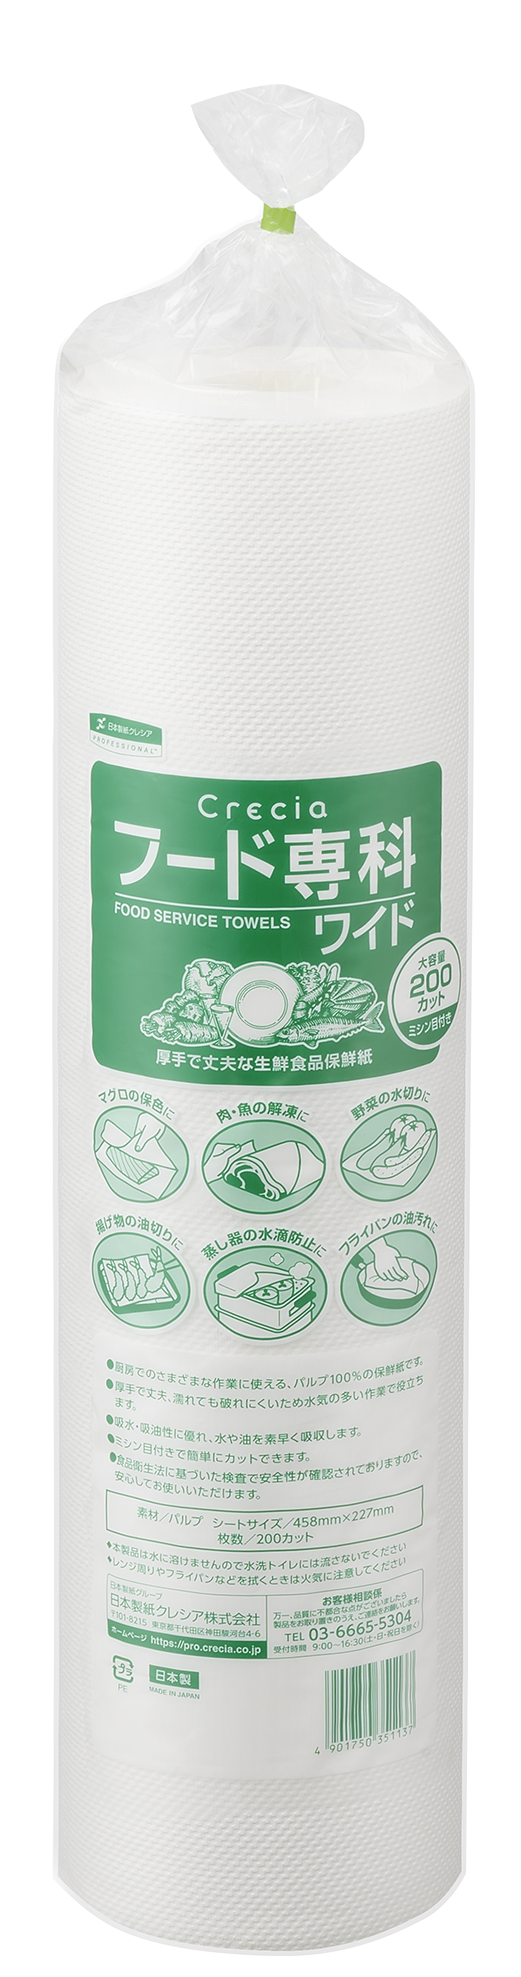 している 日本製紙クレシア XHC2101 クレシア フード専科(生鮮食品保存紙) (2R 200カット24ロール入) タンタンショップ